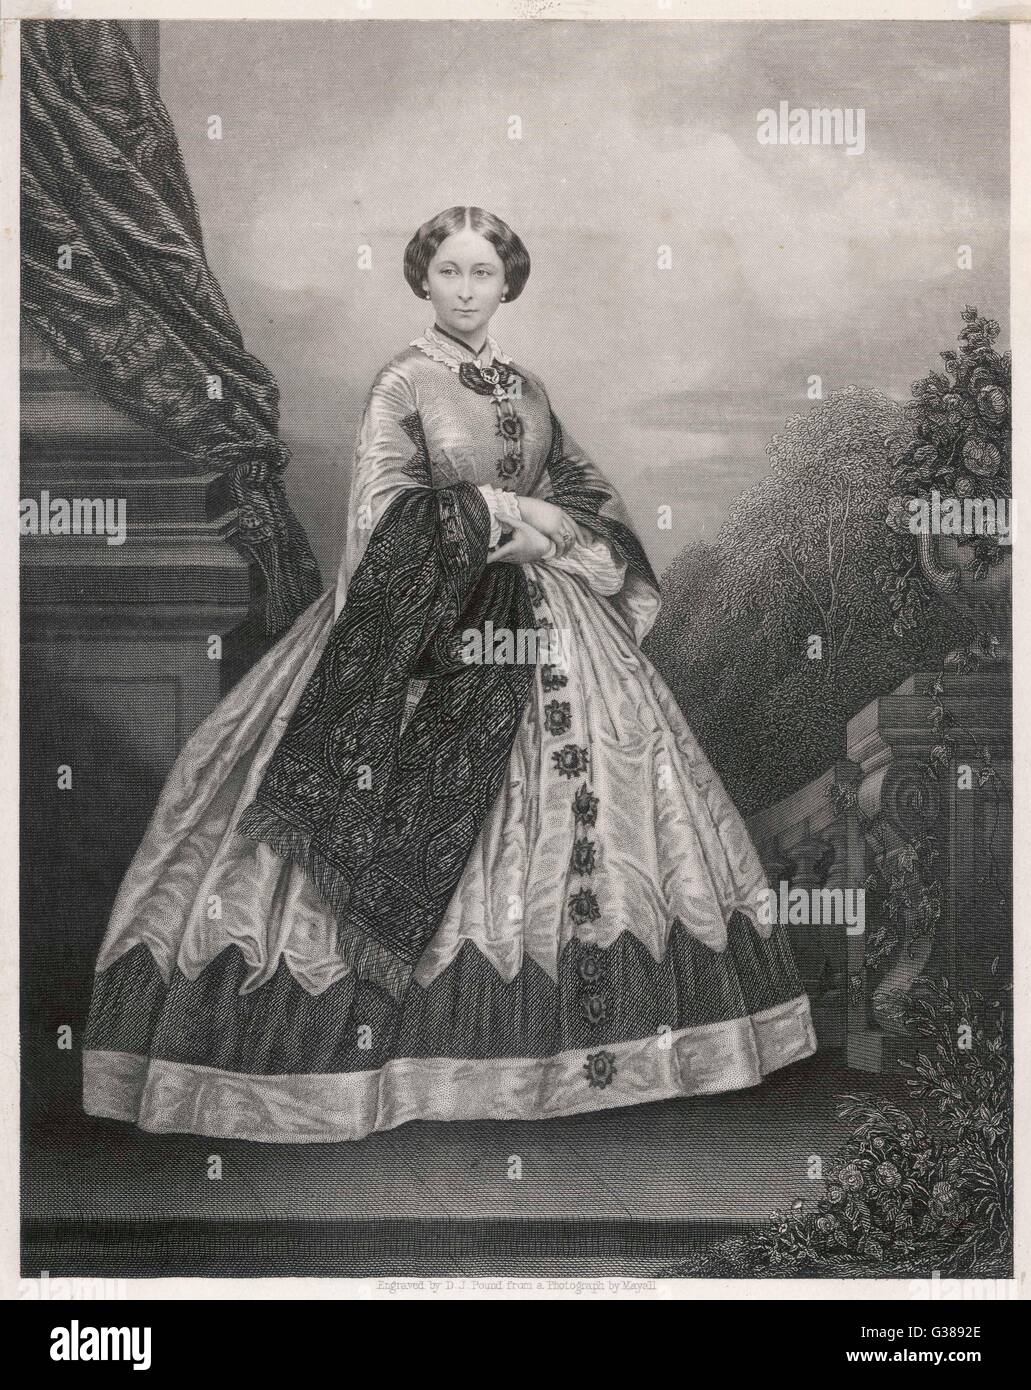 La duchessa di Hesse-DARMSTADT terzo bambino e la seconda figlia della regina Victoria; sposò il Granduca Luigi IV di Hesse-Darmstadt (1862). Madre della Zarina Alix della Russia. Data: 1843 - 1878 Foto Stock